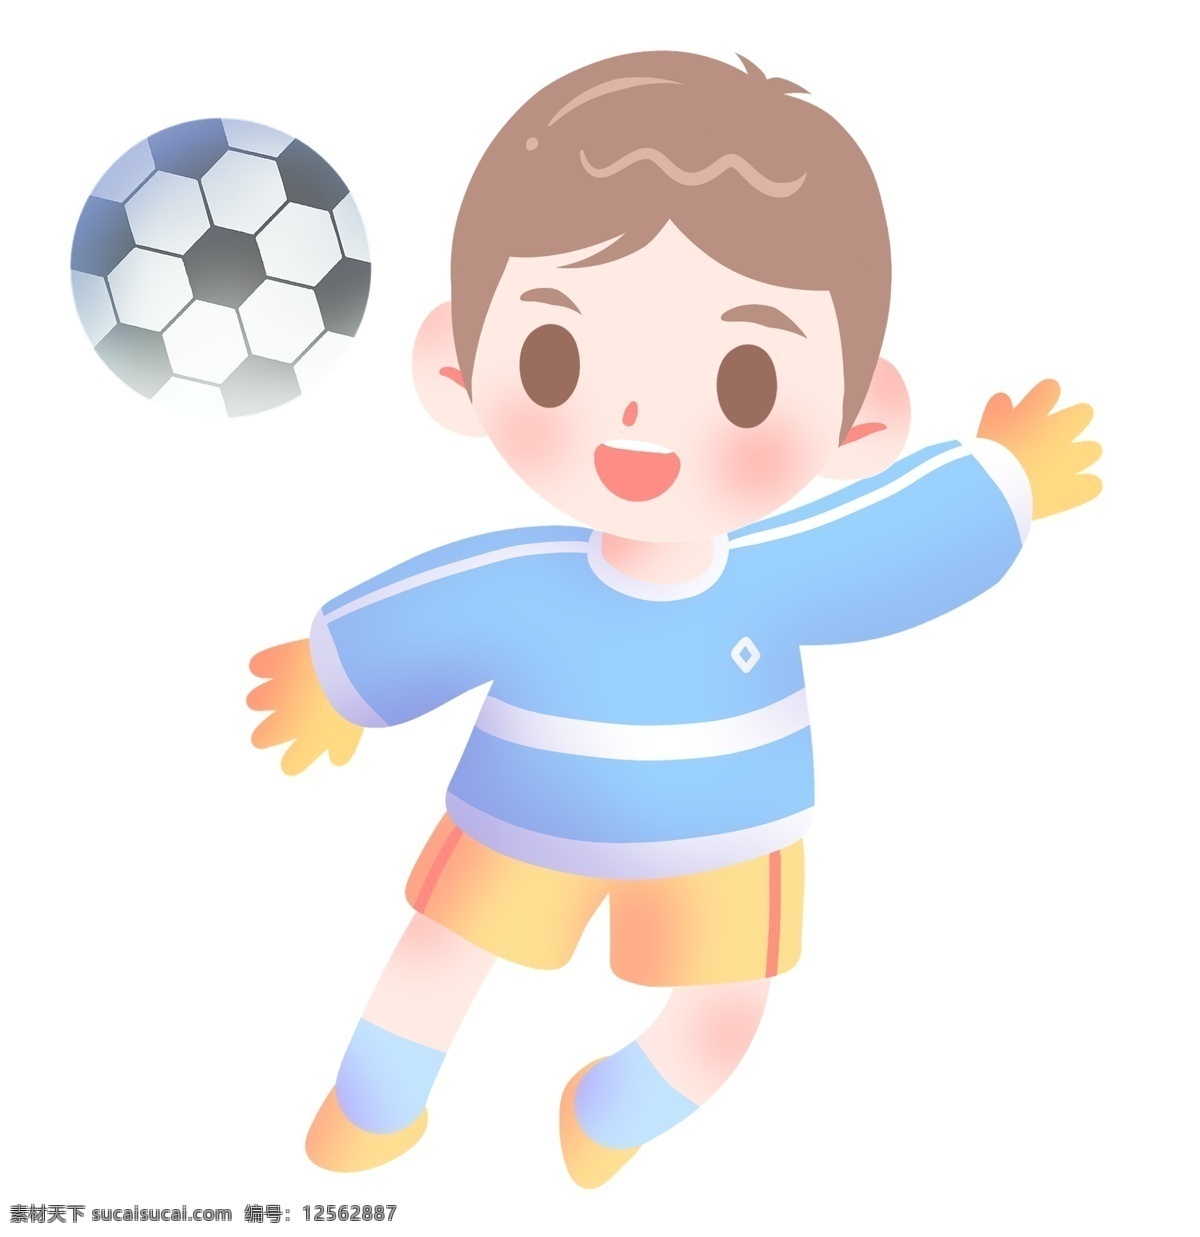 圆形 足球 小 男孩 圆形足球 健身的小男孩 踢 运动健身插画 卡通人物